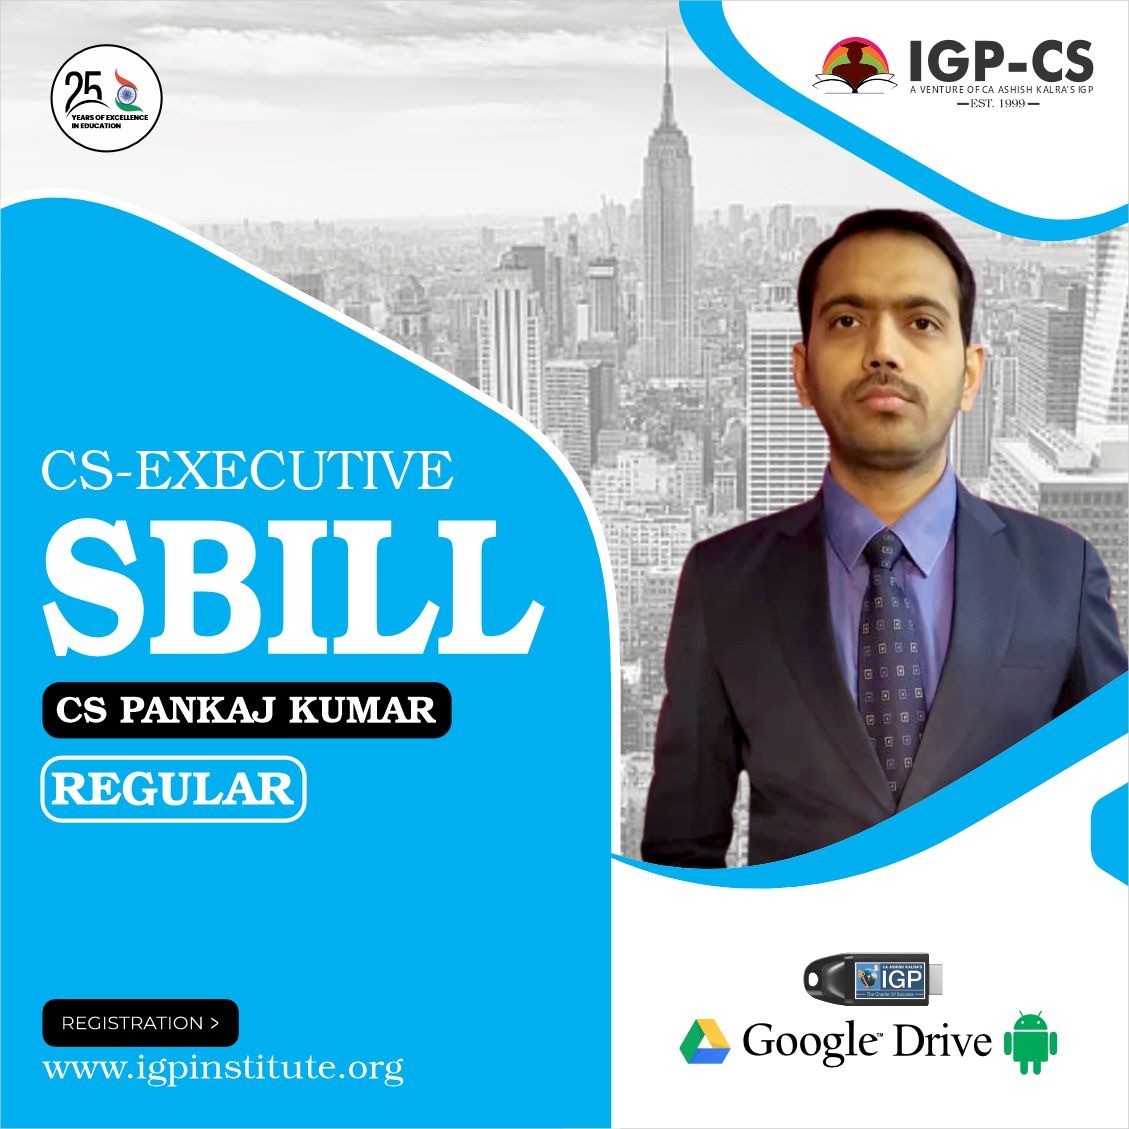 CS -Executive- SBILL